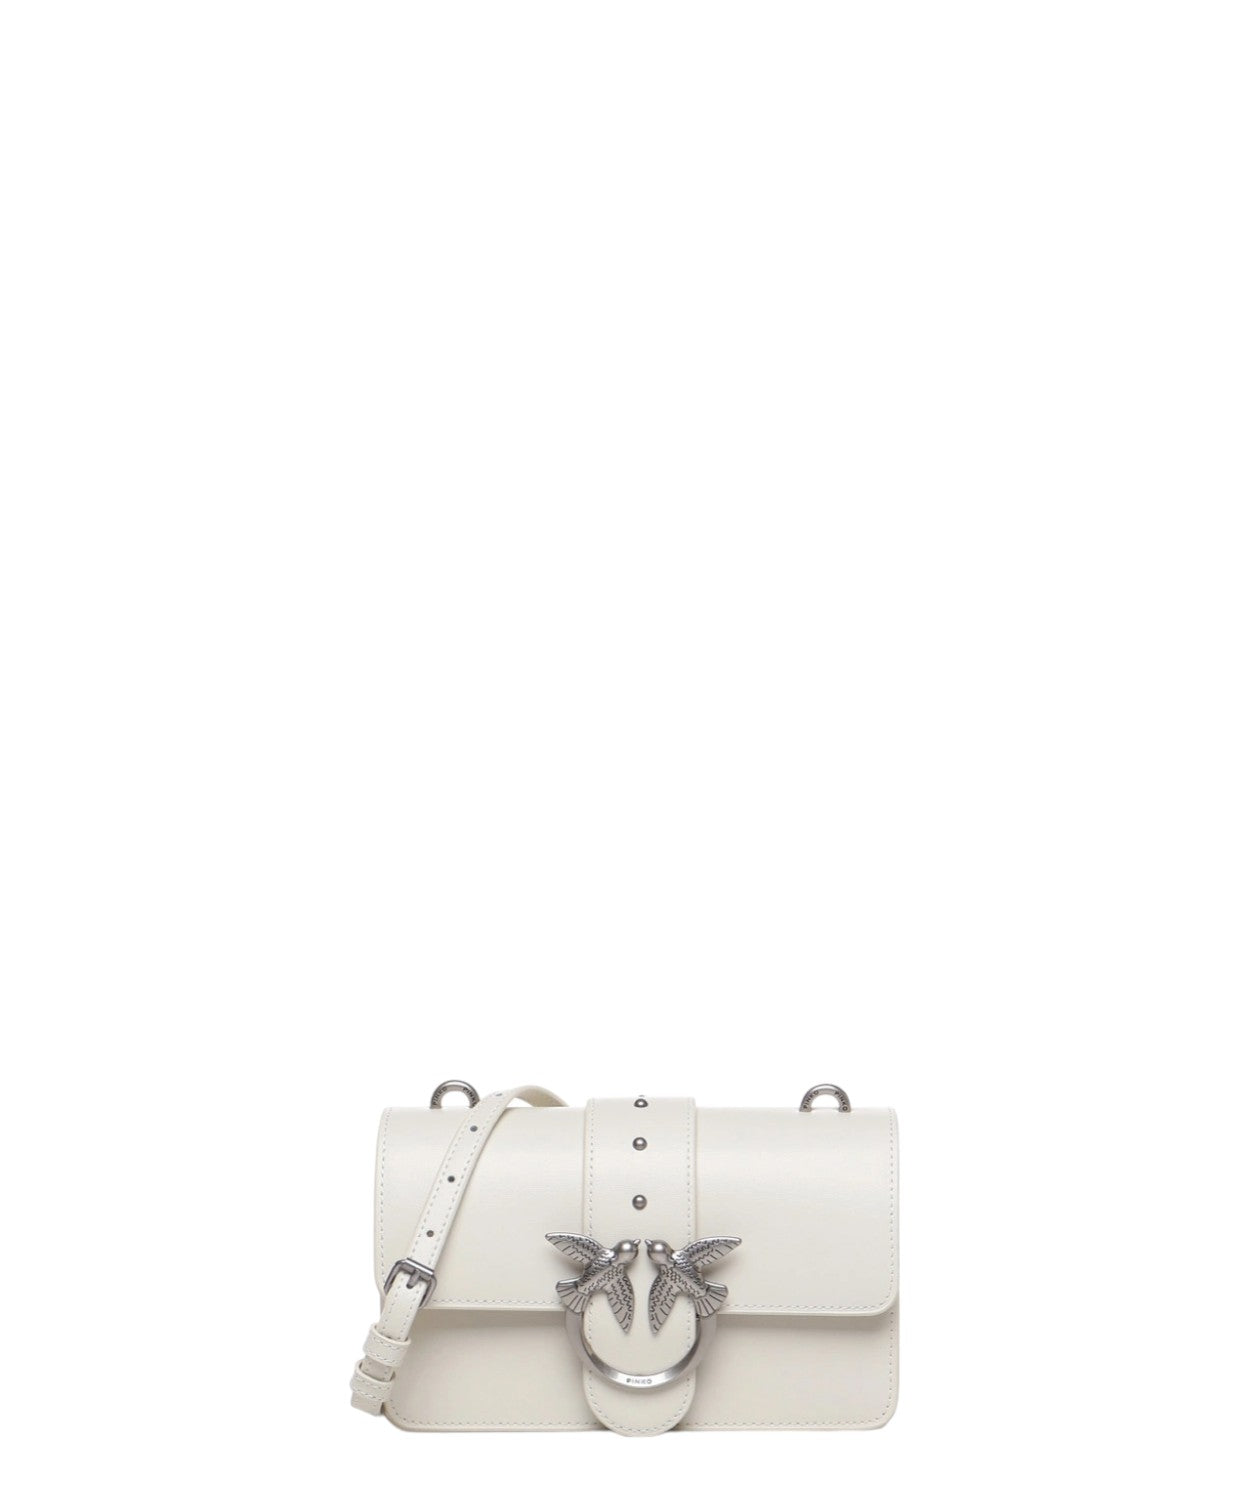 Mini love bag one simply-Borse a spalla-Pinko-Vittorio Citro Boutique